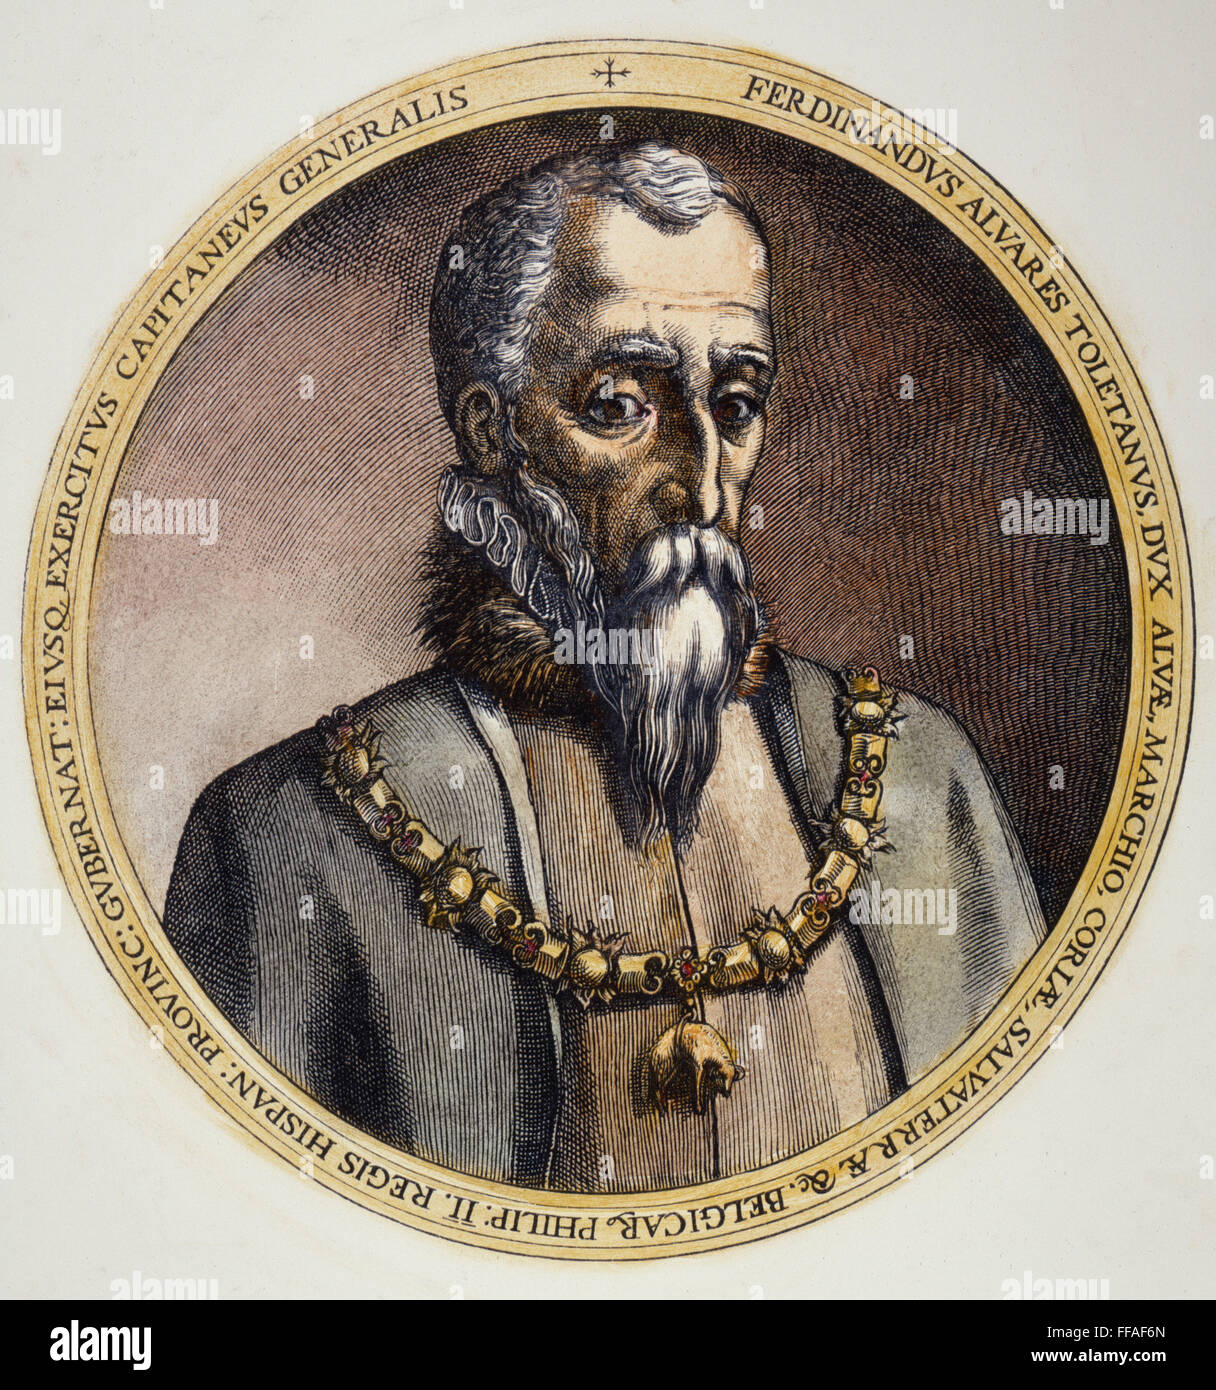 HERZOG VON ALBA (1507-1582). /nFernando Alvarez de Toledo, 3. Herzog von Alba. Zeitgenössische Linie Gravur. Stockfoto